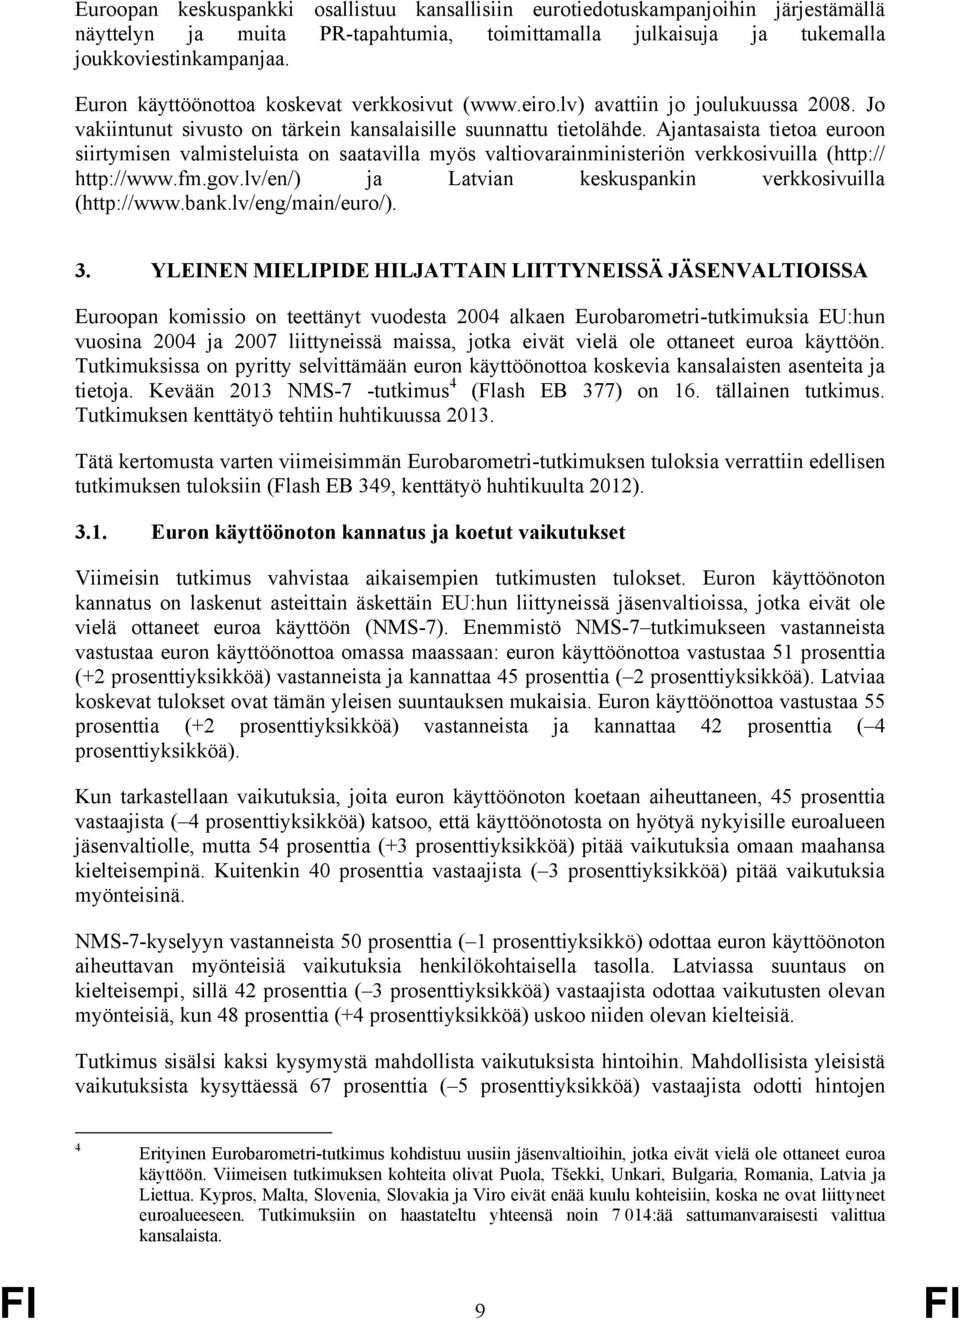 Ajantasaista tietoa euroon siirtymisen valmisteluista on saatavilla myös valtiovarainministeriön verkkosivuilla (http:// http://www.fm.gov.lv/en/) ja Latvian keskuspankin verkkosivuilla (http://www.